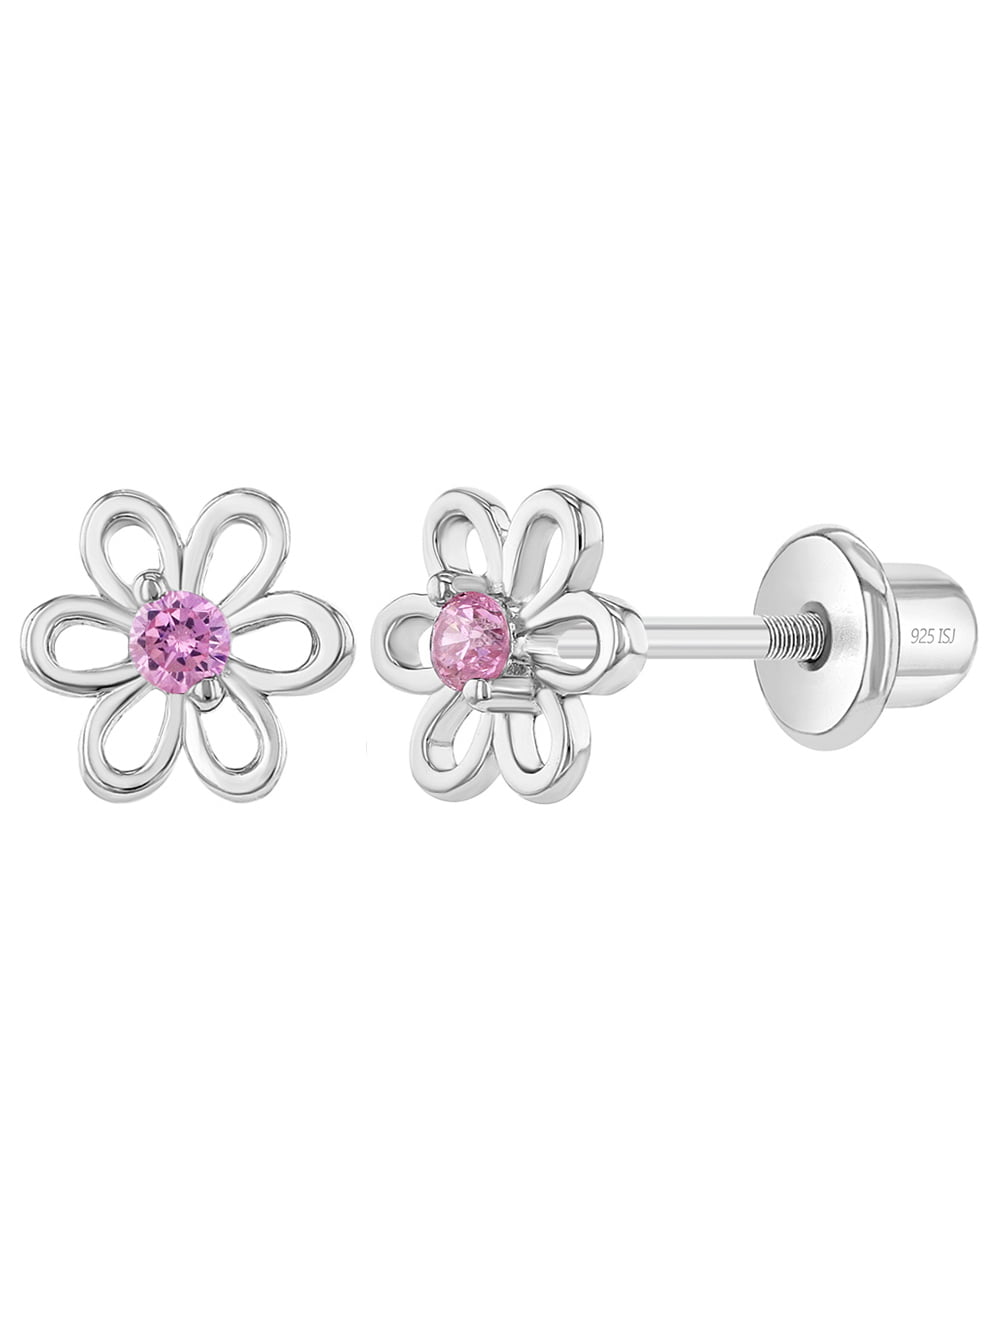 Details about   .925 Sterling Silver 7 MM Children's Purple CZ Enamel Flower Stud Earrings 